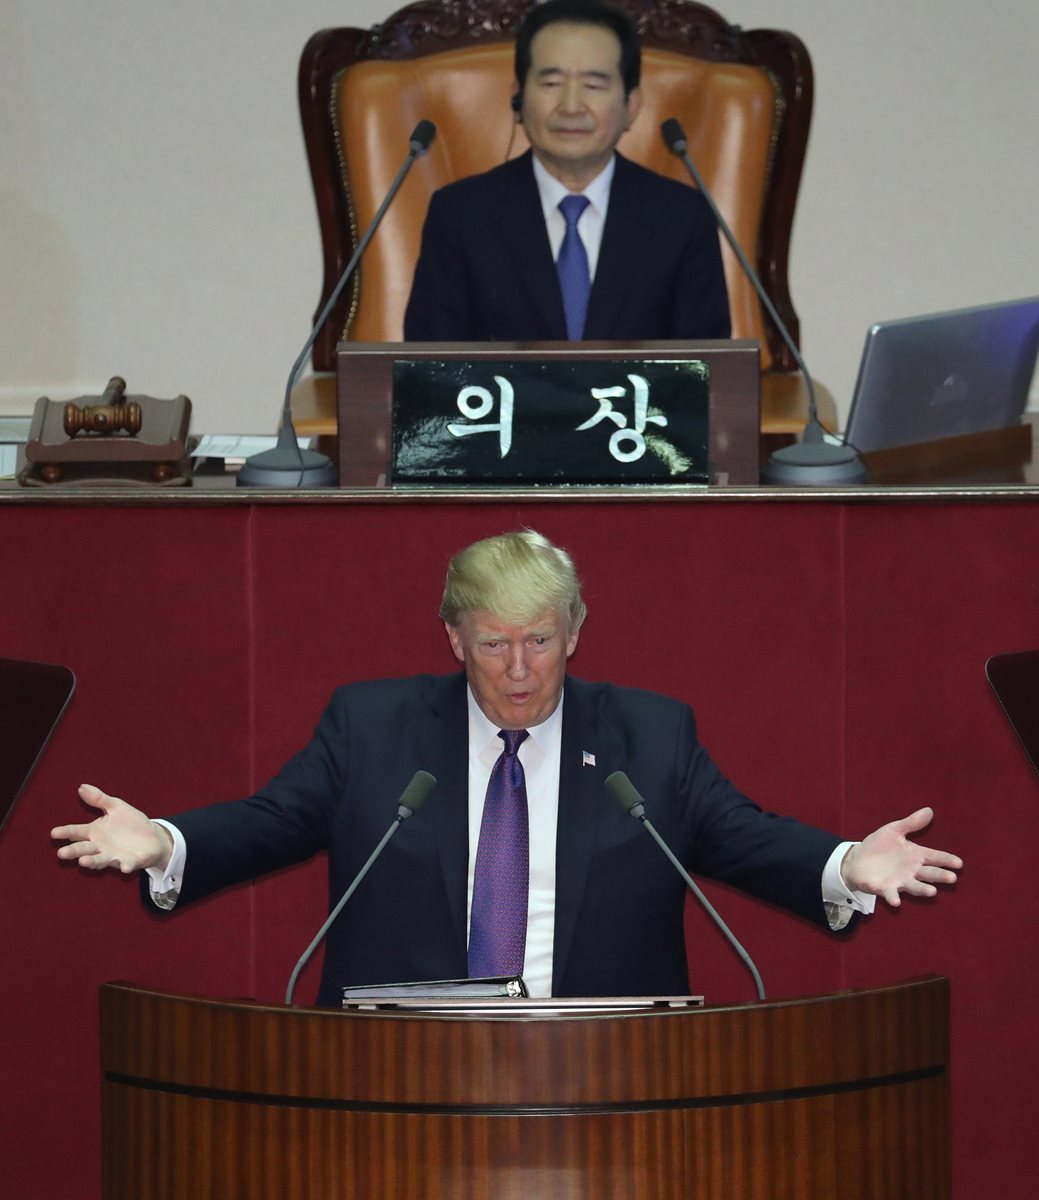 Durante su visita a Corea del Sur, el presidente Donald Trump visitó el Senado de Seúl, en donde pronunció su discurso. (Foto Prensa Libre: EFE)